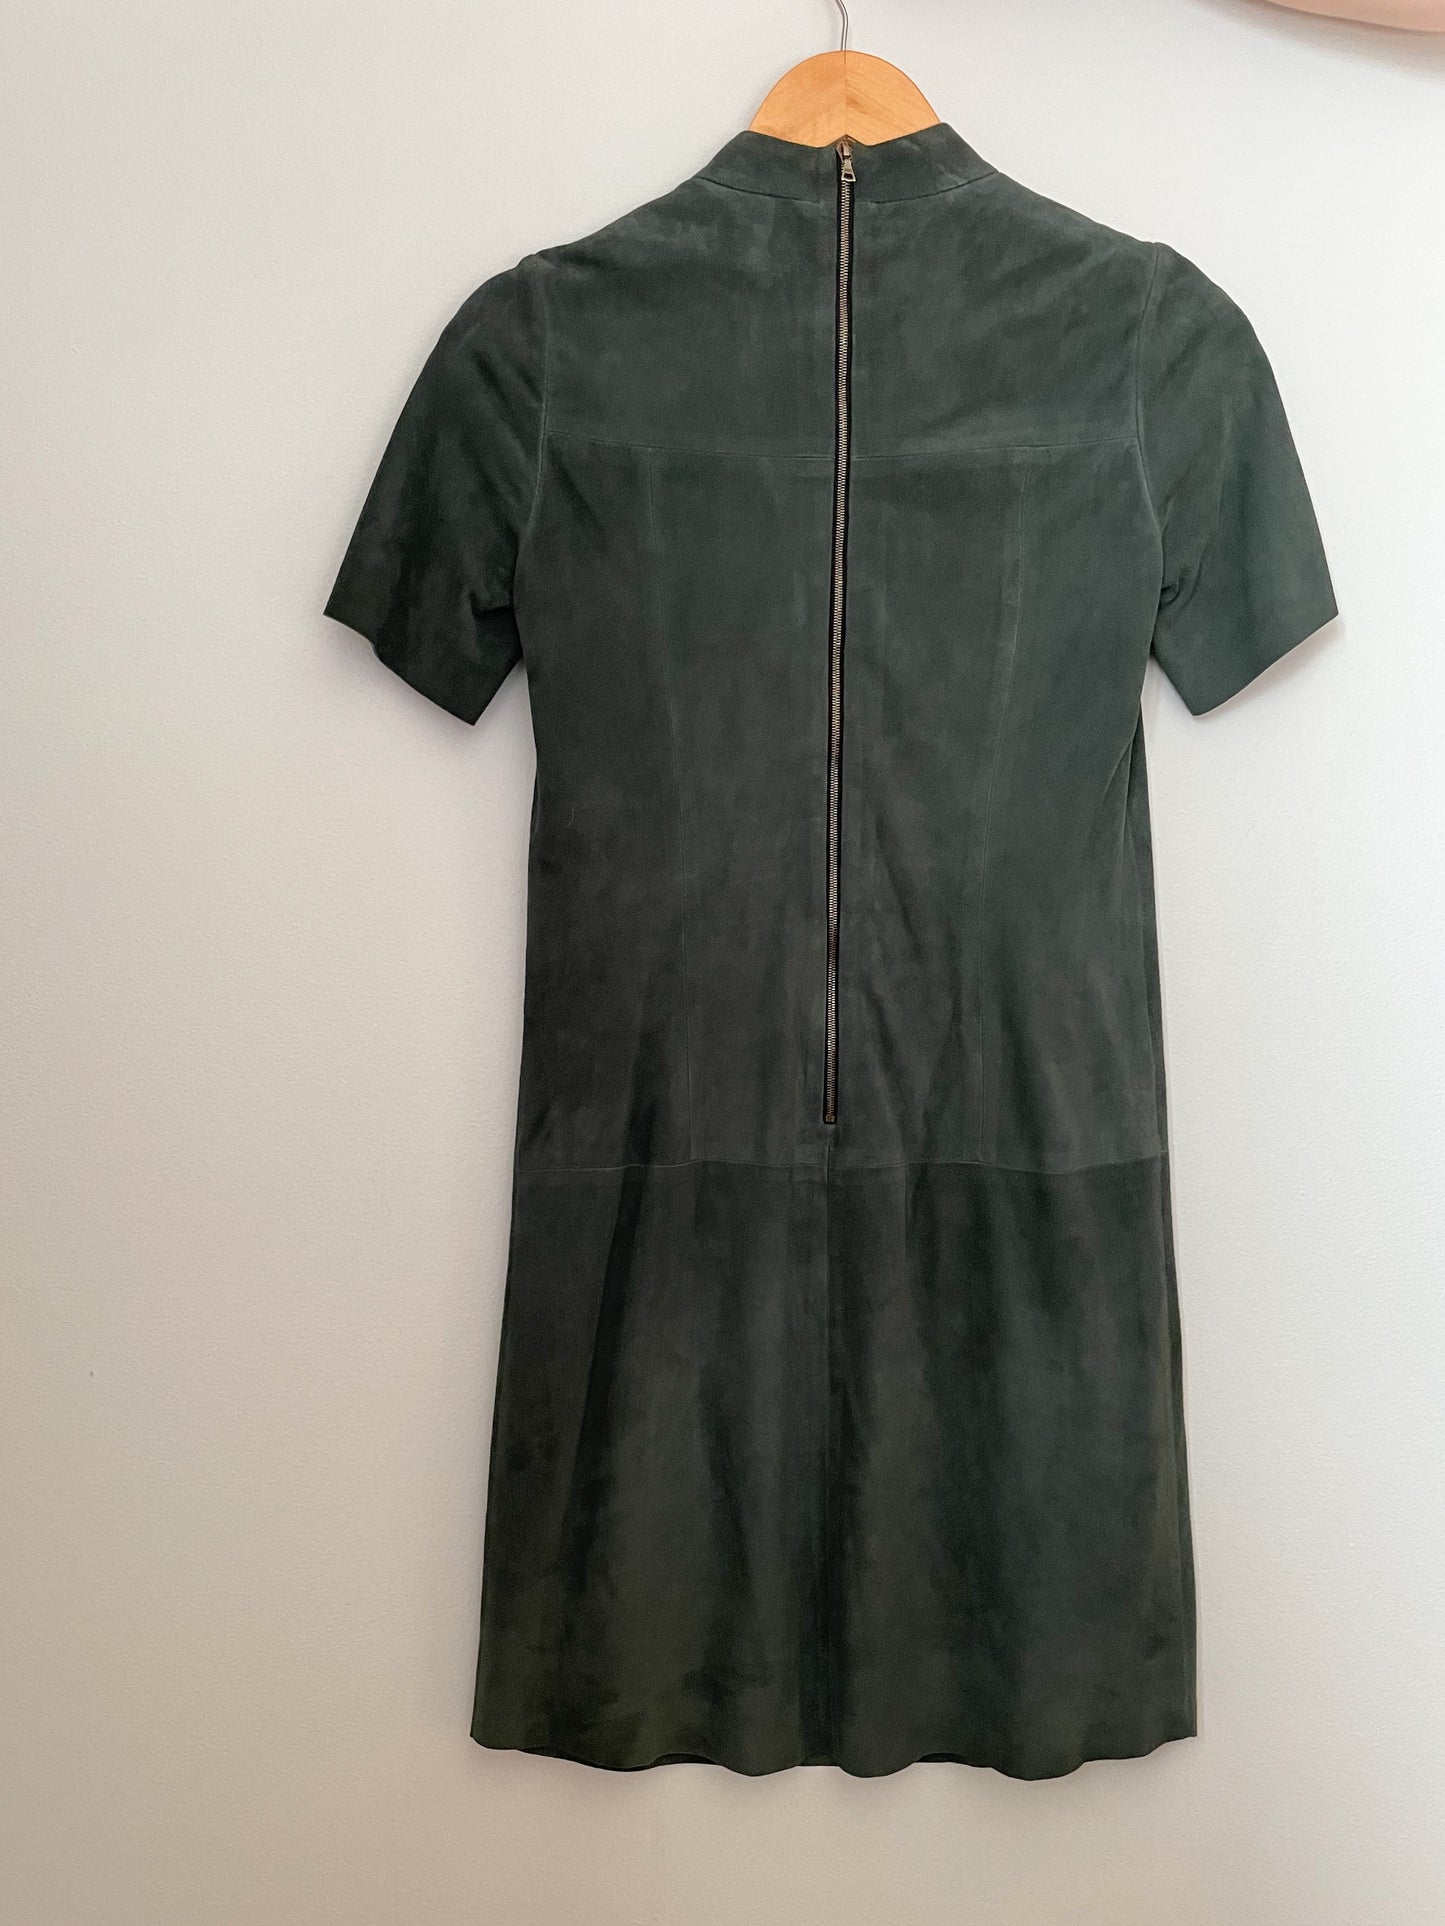 Judith & Charles Hunter Green Genuine Suede Leather Mockneck Dress - Size 0